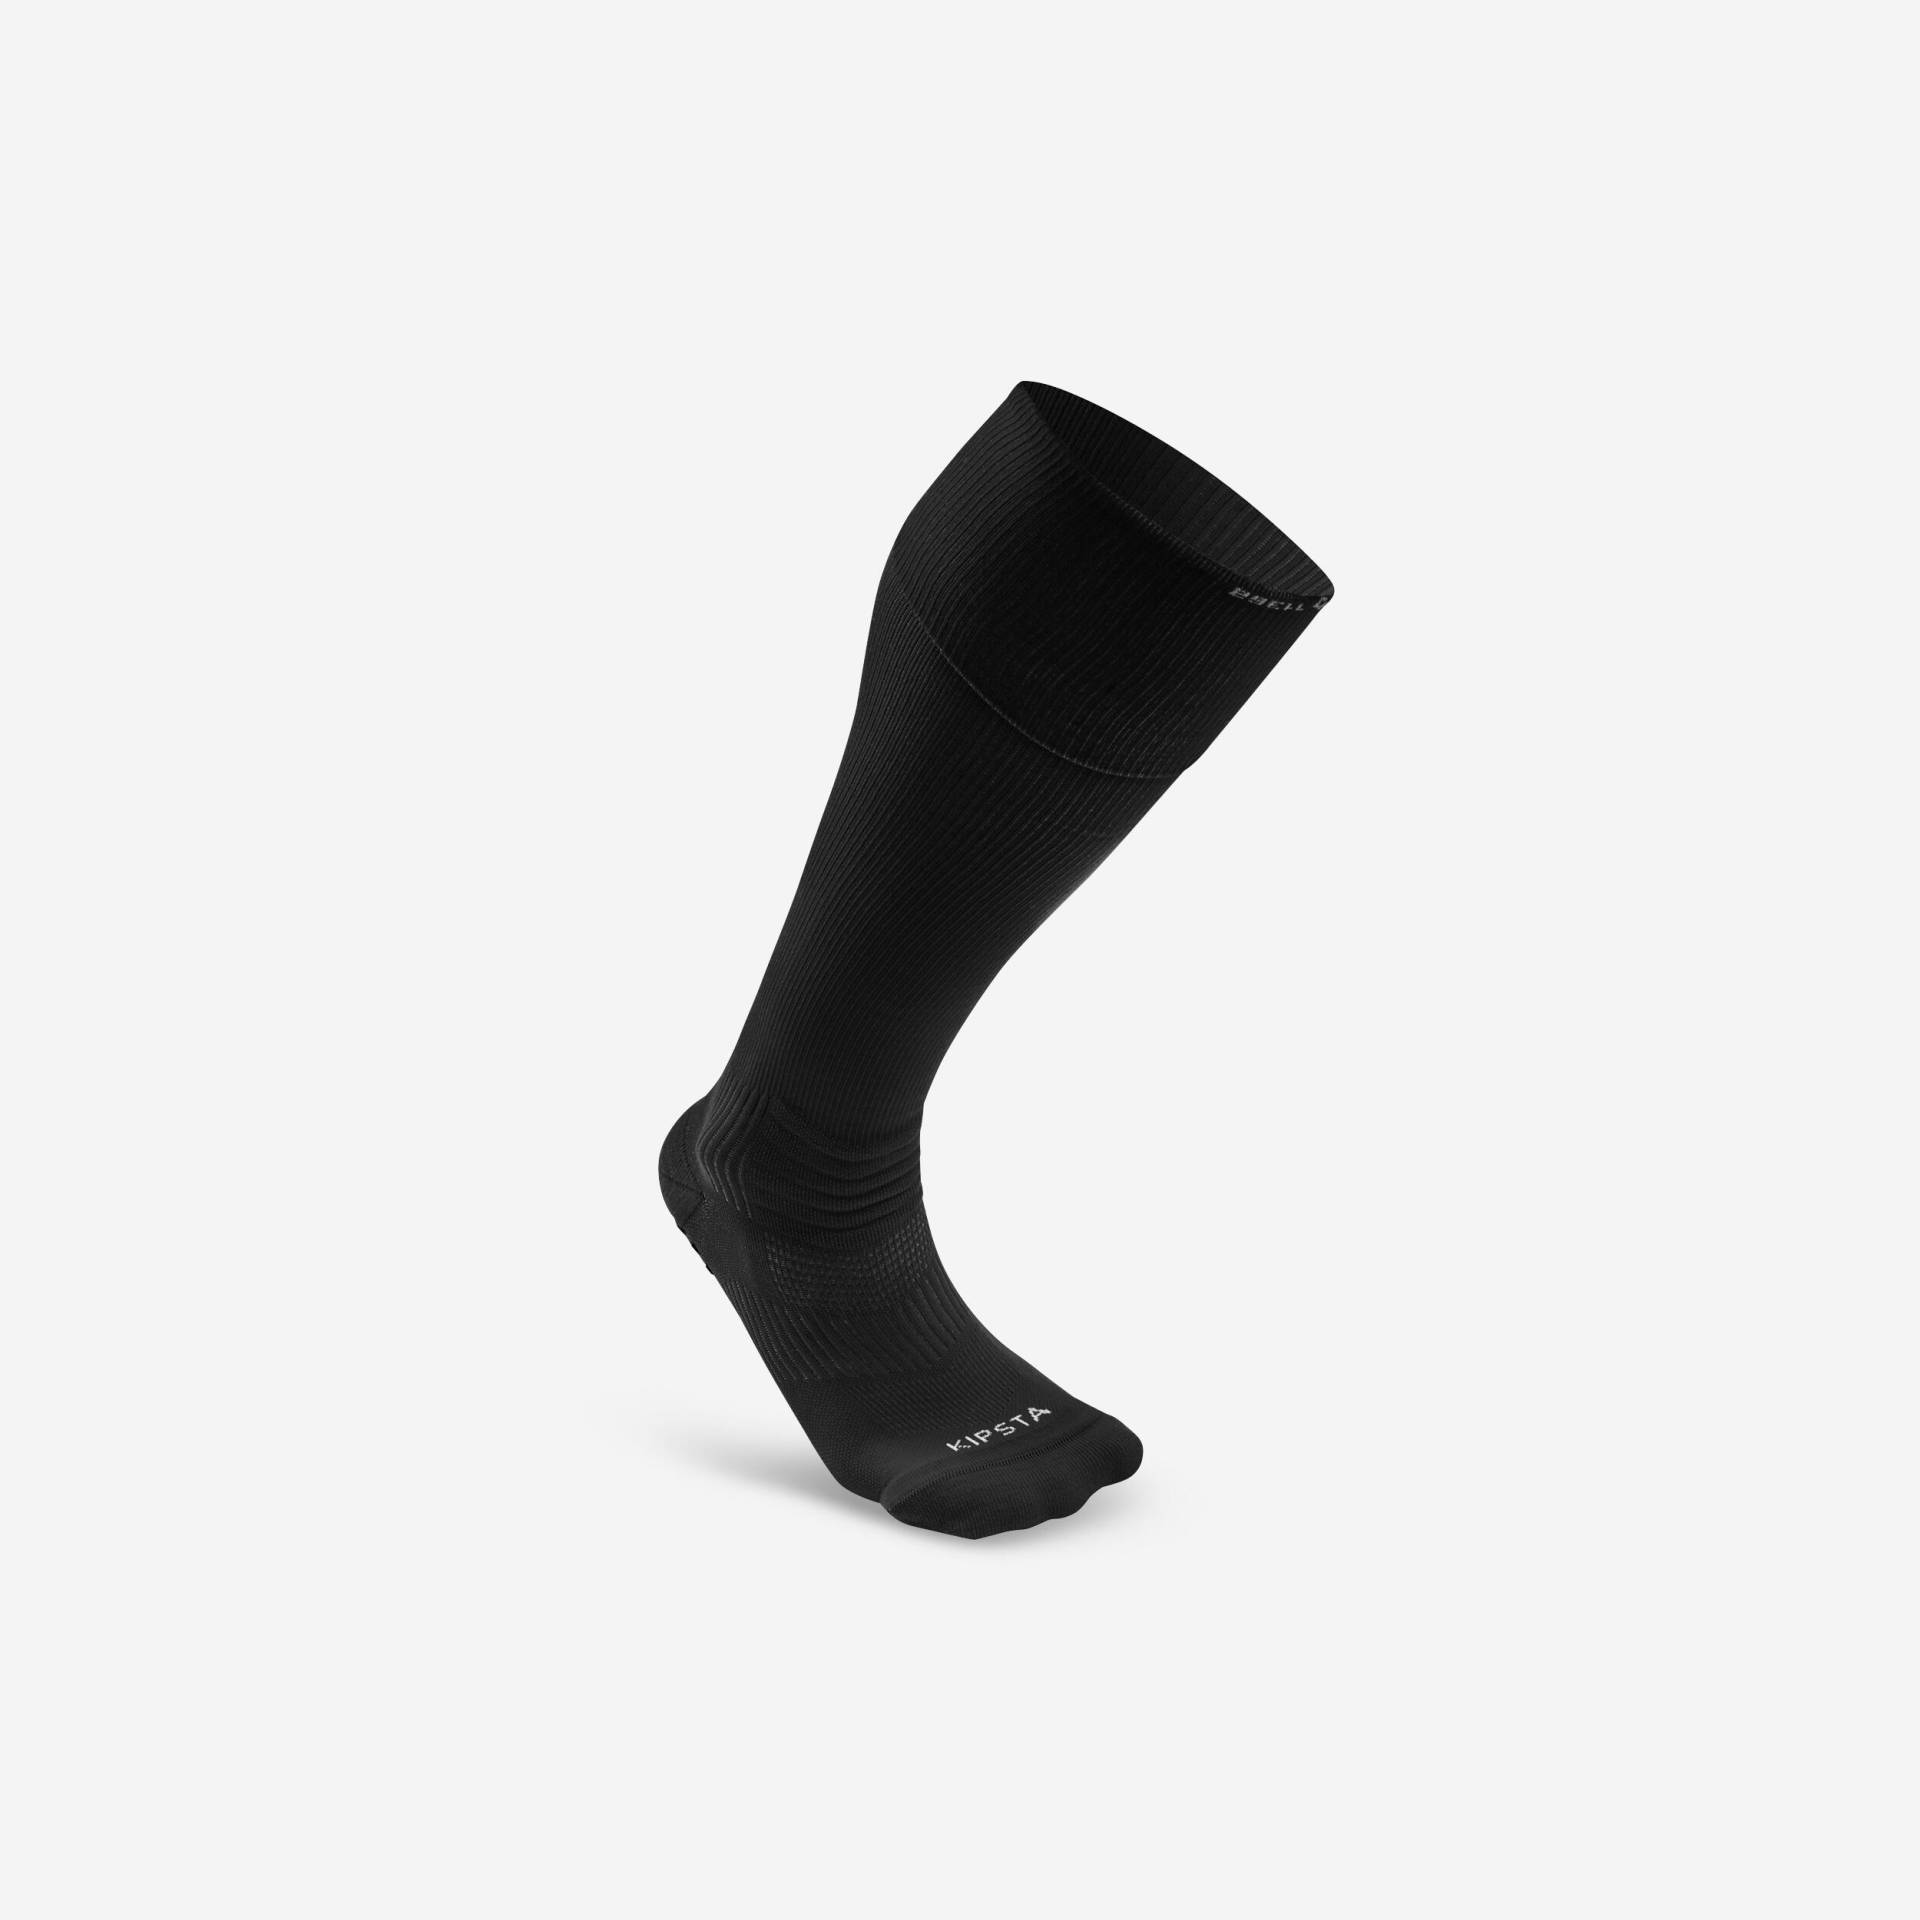 Damen/Herren Fussball Stutzen hoch mit rutschfesten Socken - Viralto II schwarz von KIPSTA